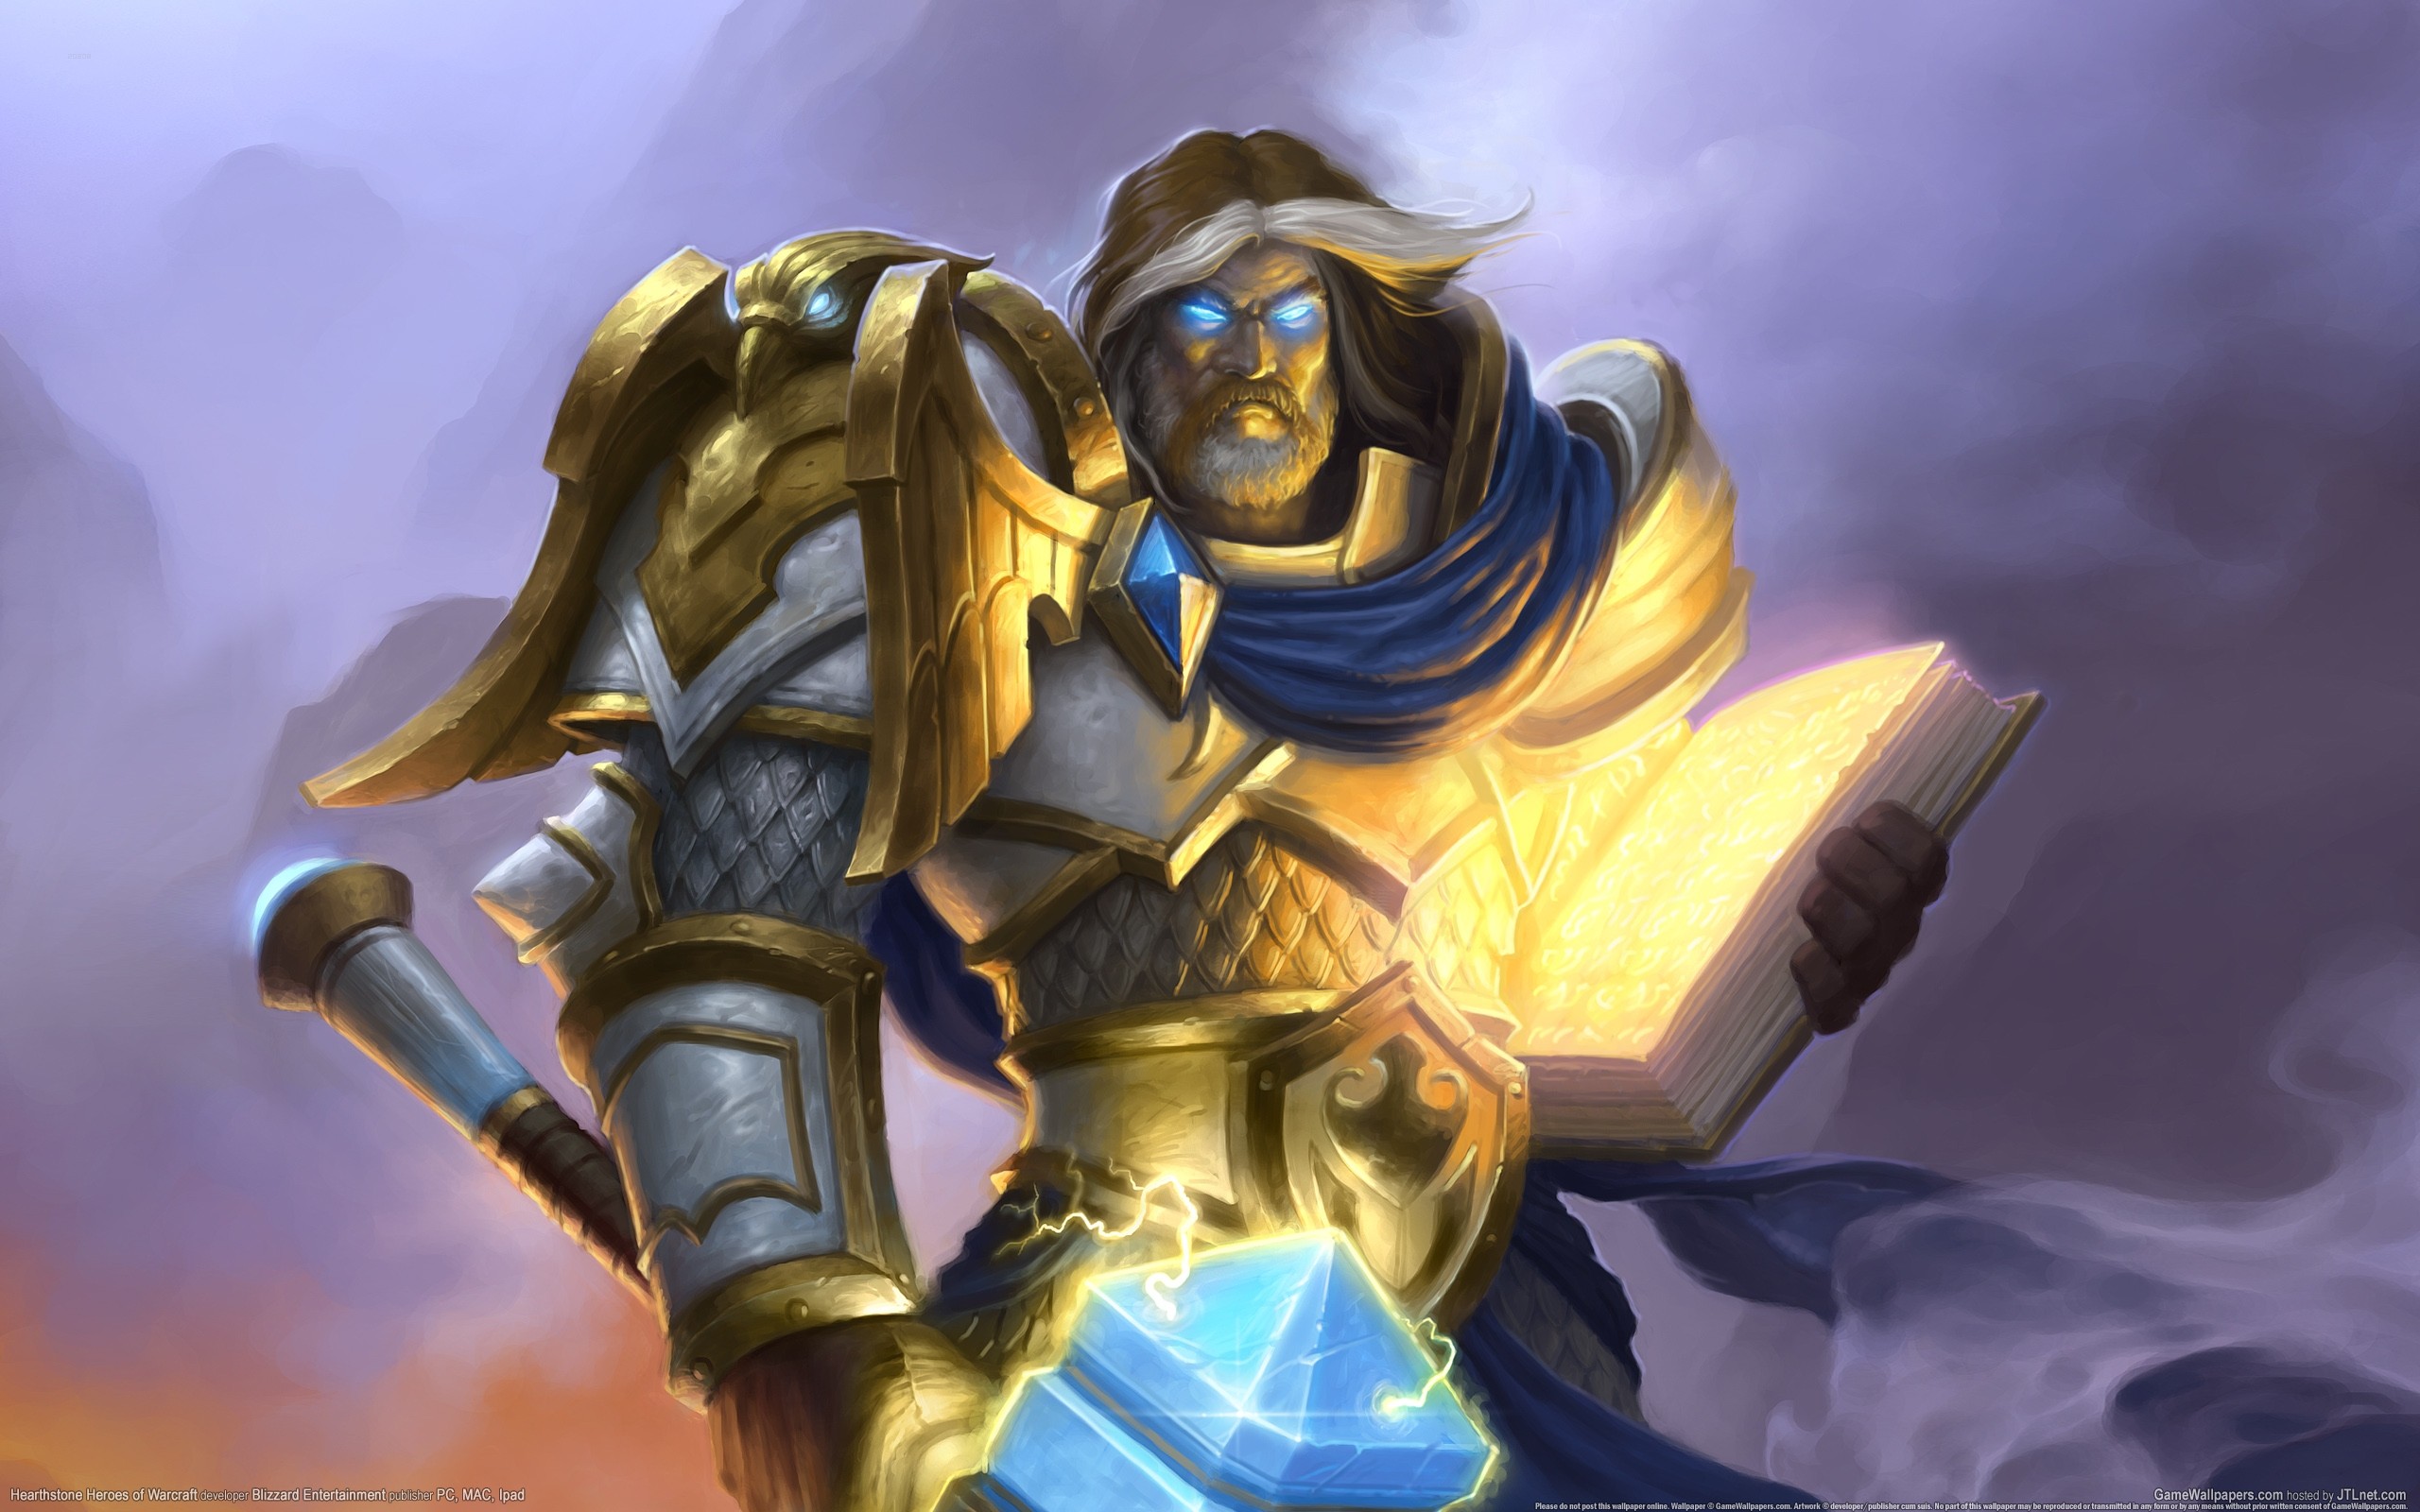 General 2560x1600 Hearthstone Uther the Lightbringer blue eyes armor fantasy men fantasy art PC gaming fantasy armor Hearthstone: Heroes of Warcraft digital art